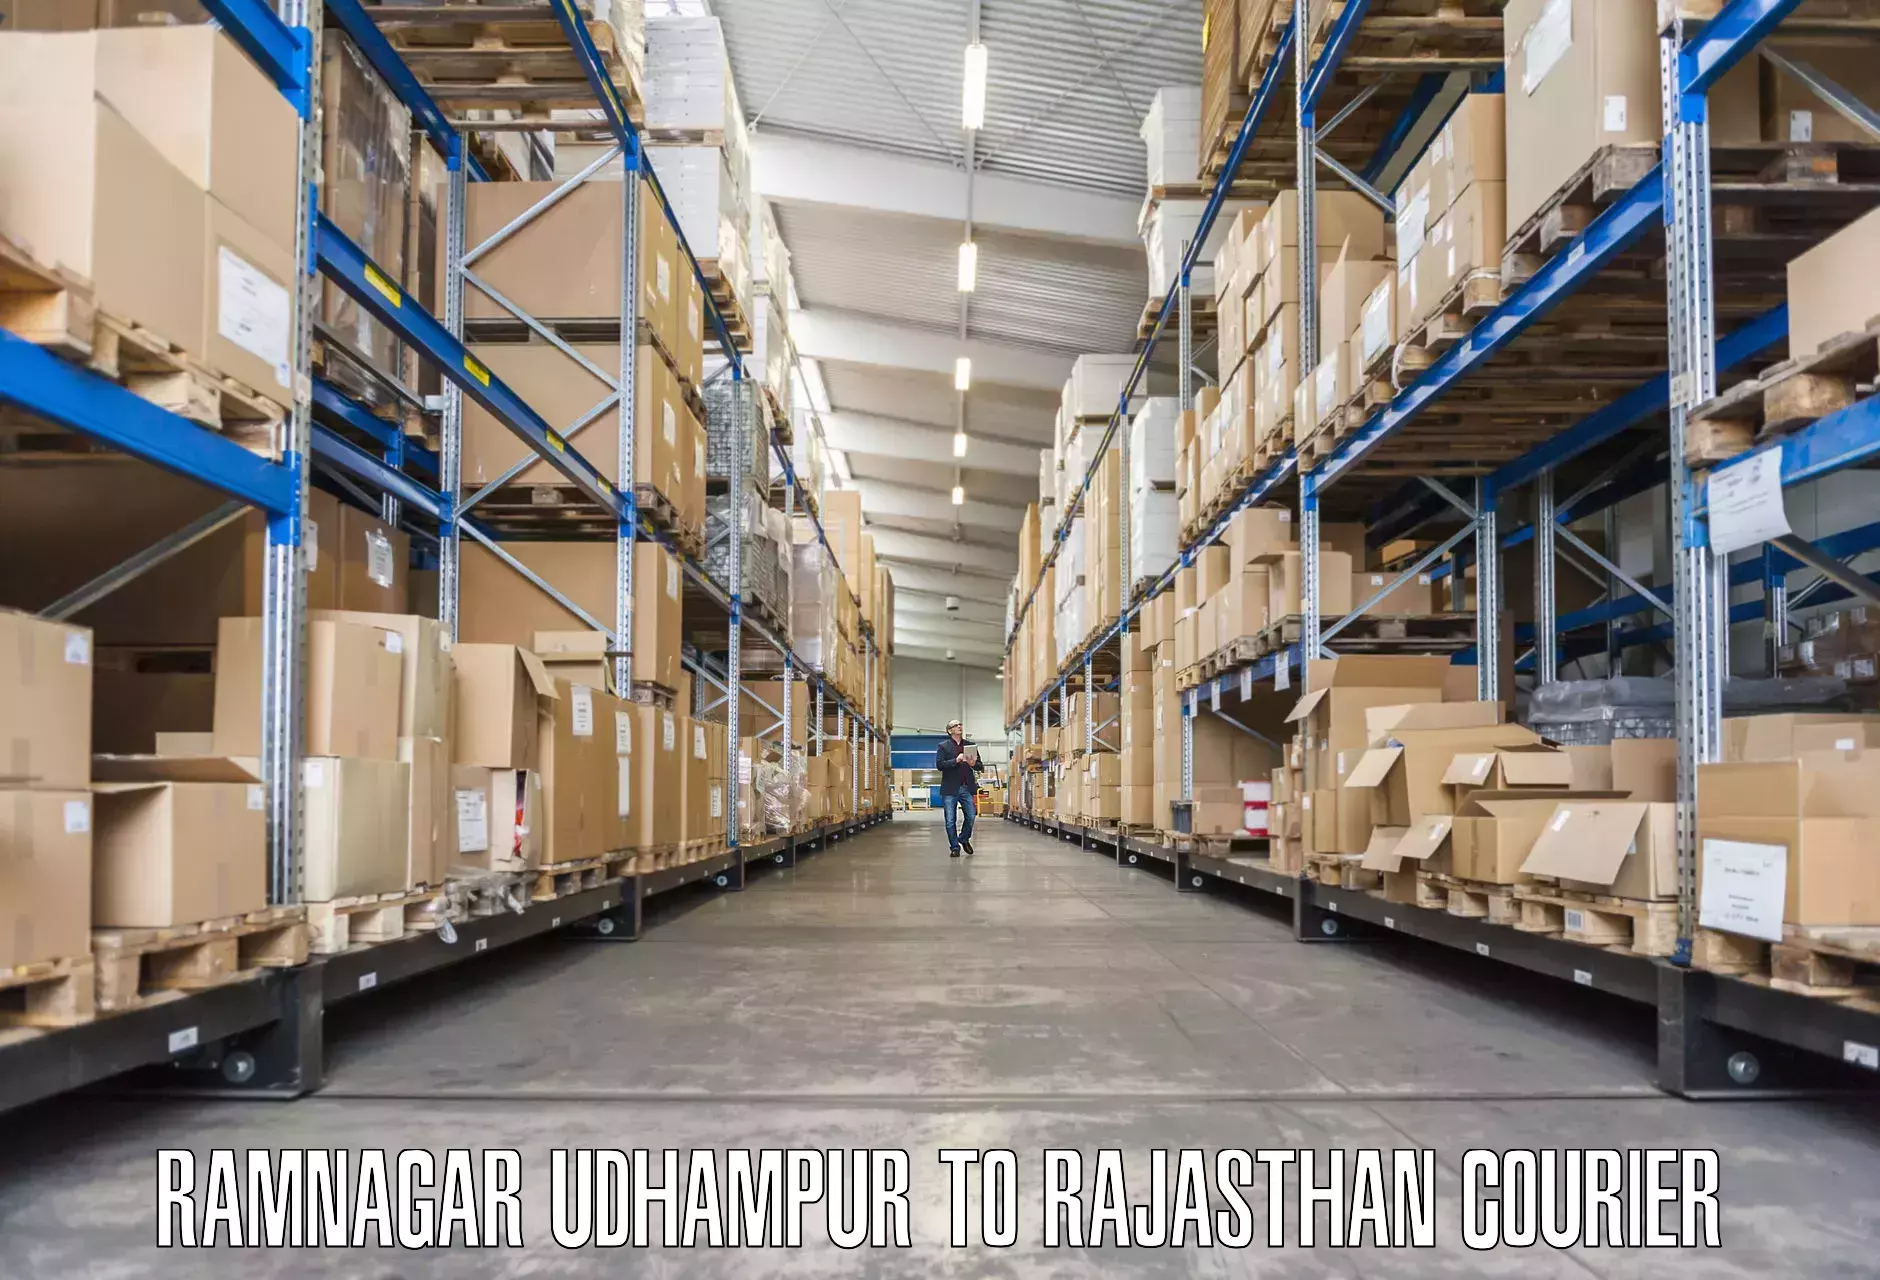 Furniture transport services Ramnagar Udhampur to Kankroli